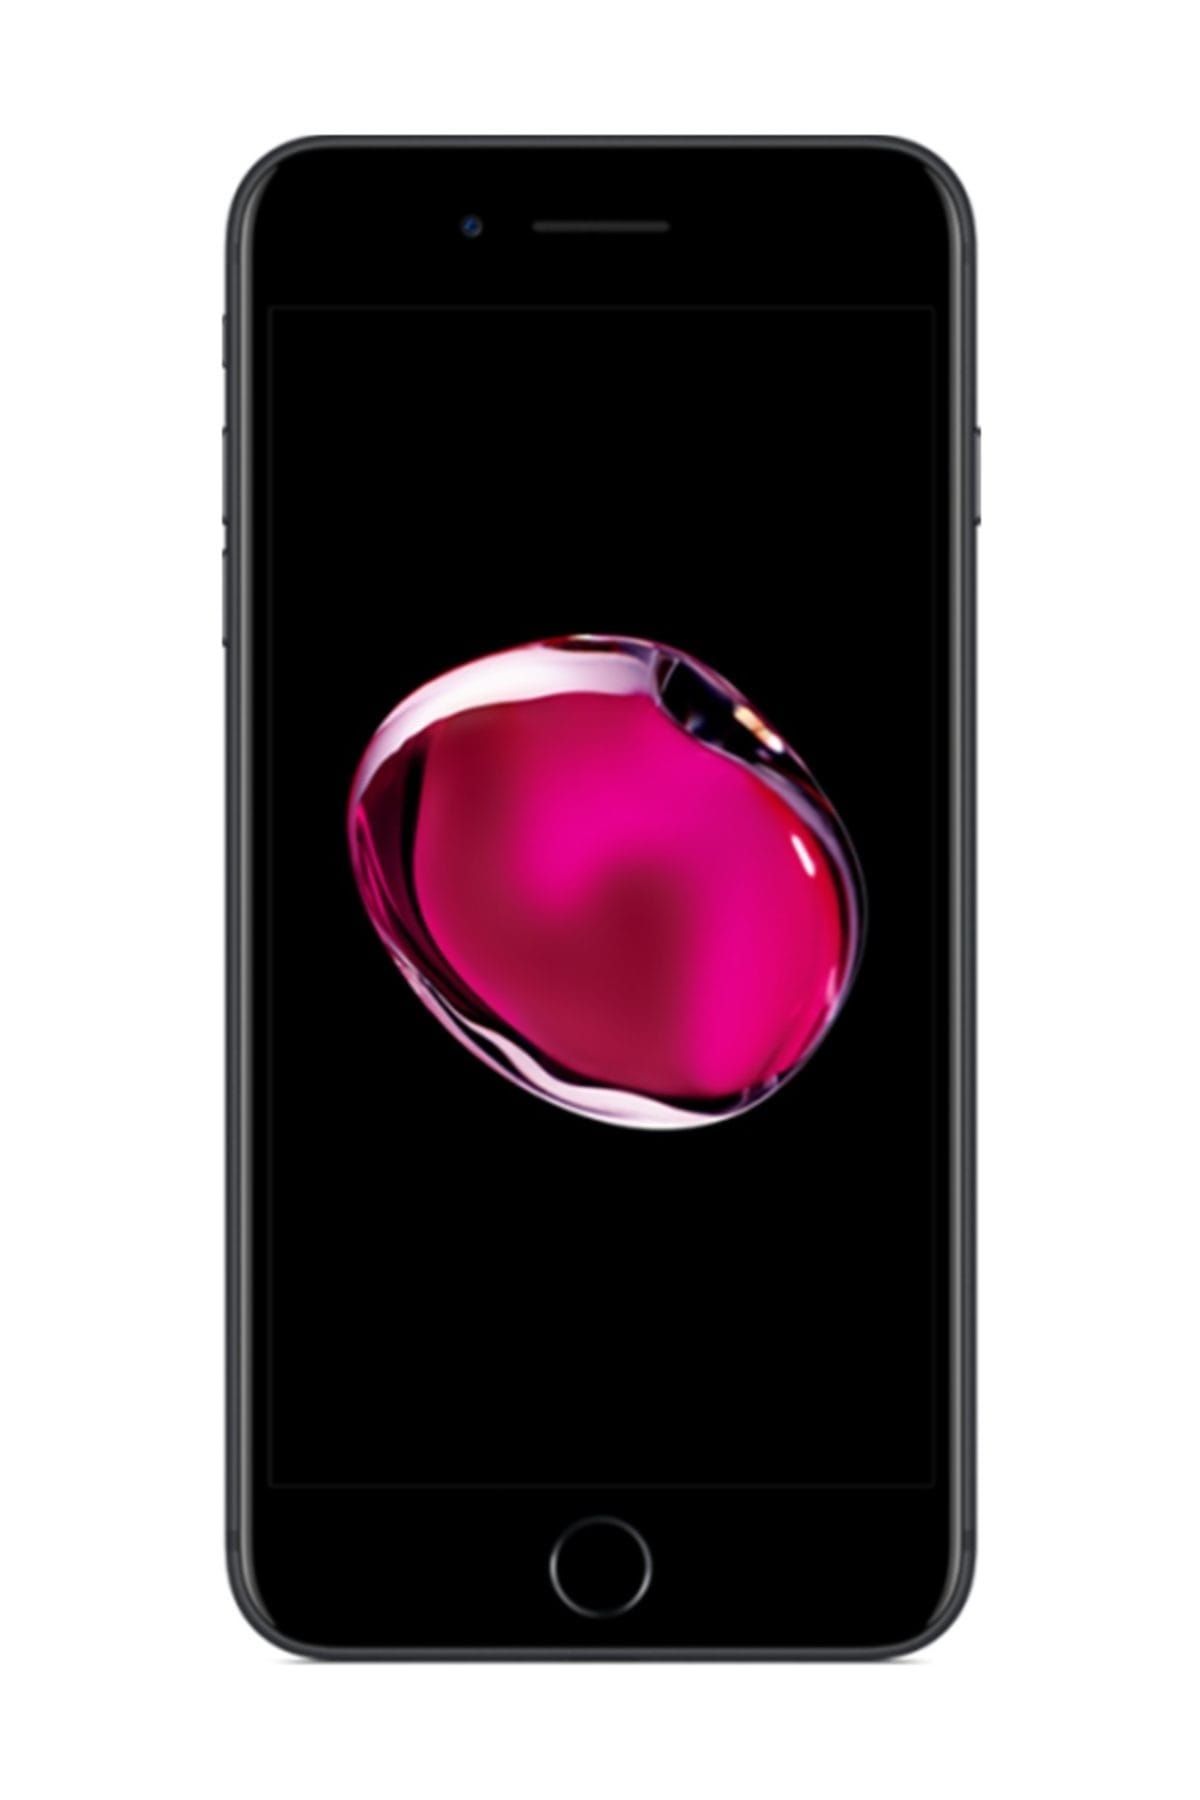 Apple iPhone 7 Plus 32GB Siyah Cep Telefonu (Apple Türkiye Garantili) AP-IPHO7P32